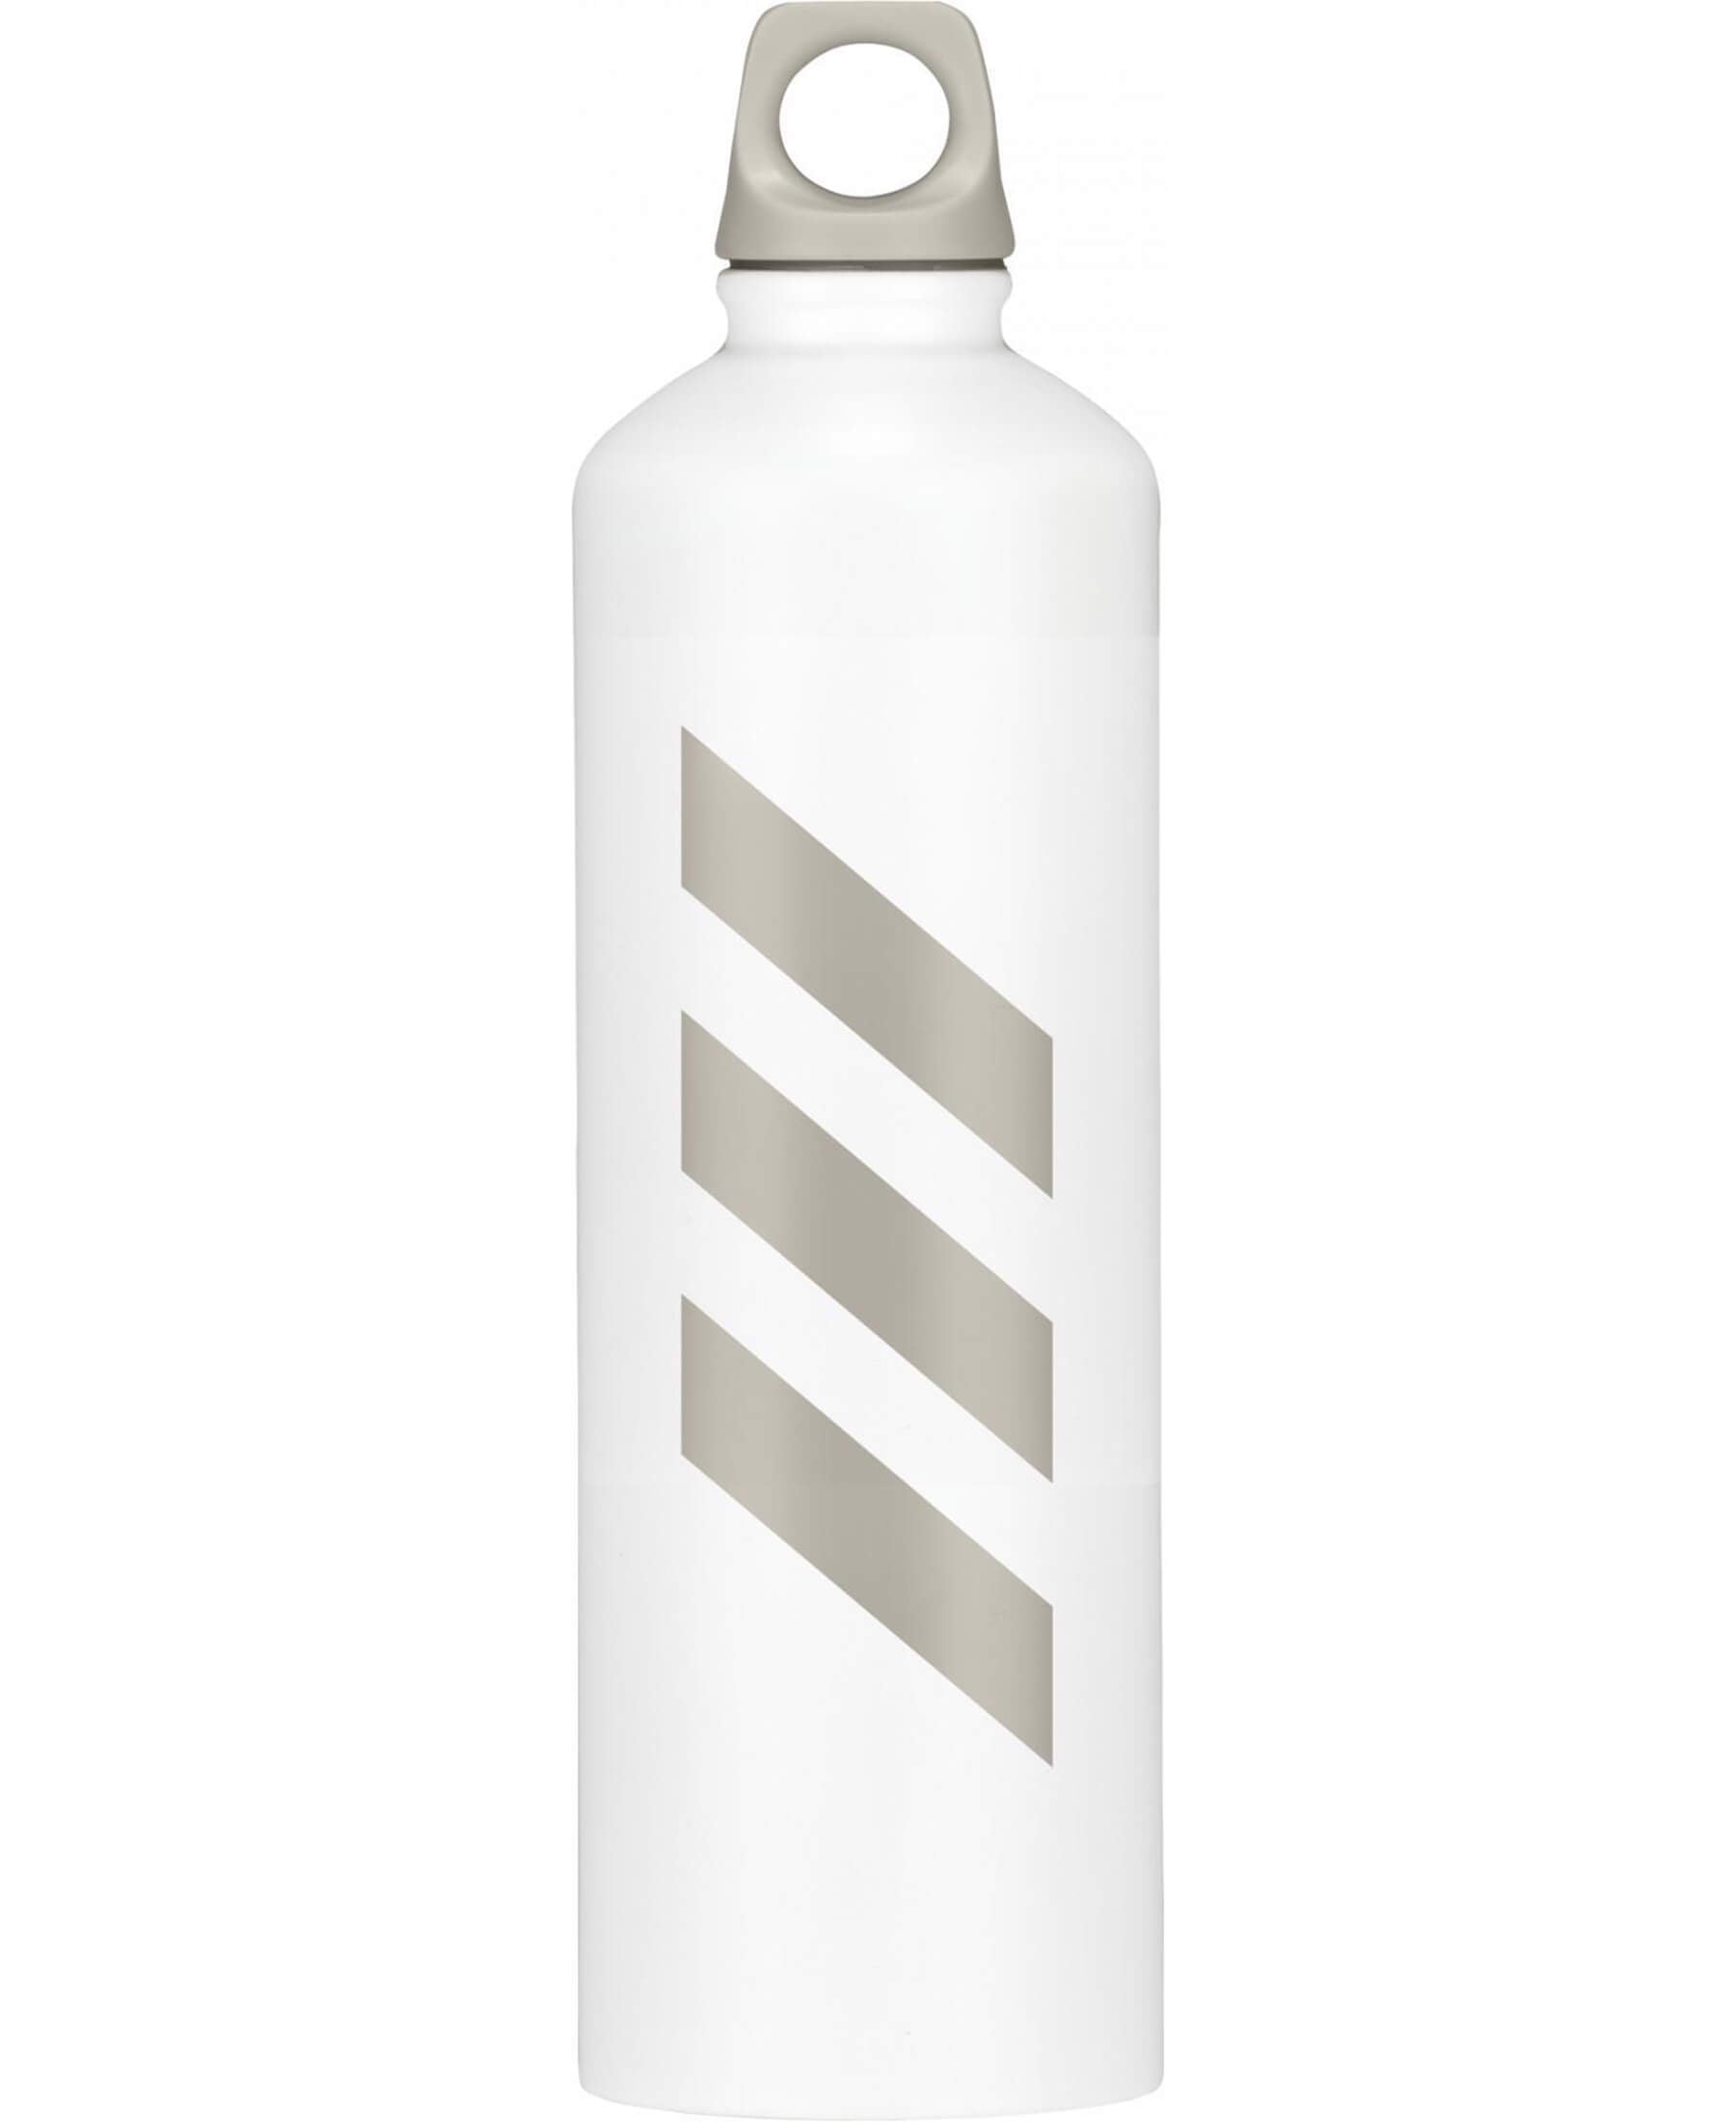 Adidas Steel Bottle 0.75 Metall Trinkflasche GN1878 - Hochwertige und langlebige Trinkflasche von Adidas aus Edelstahl. Mit einem Fassungsvermögen von 0,75 Litern ist sie perfekt für unterwegs, Sport oder Outdoor-Aktivitäten geeignet. Die auslaufsichere Verschlusskappe sorgt für eine sichere Handhabung. Jetzt bei SHOP4TEAMSPORT erhältlich.